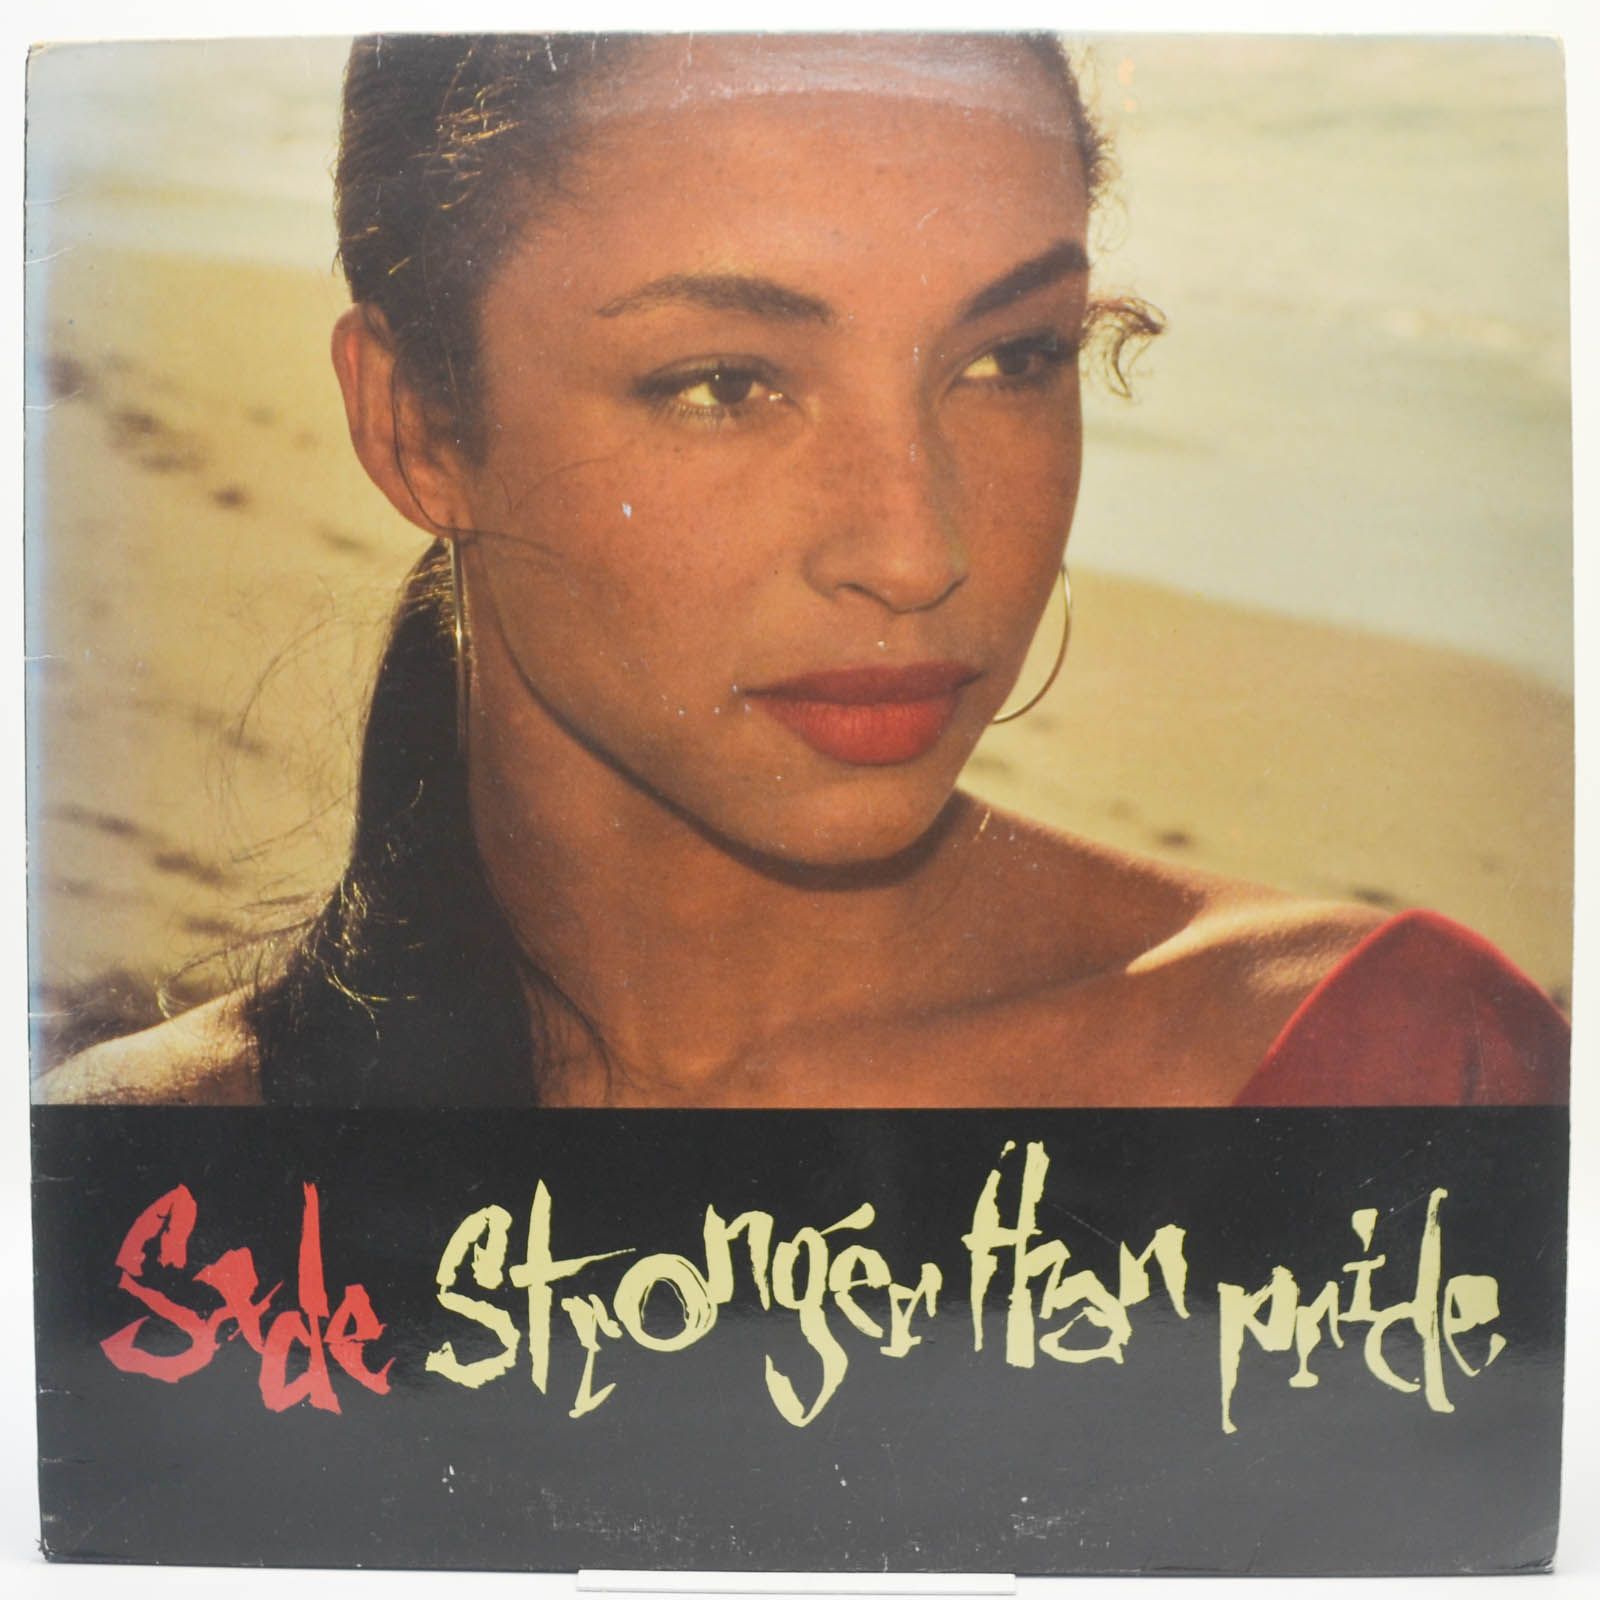 Sade — Stronger Than Pride, 1988